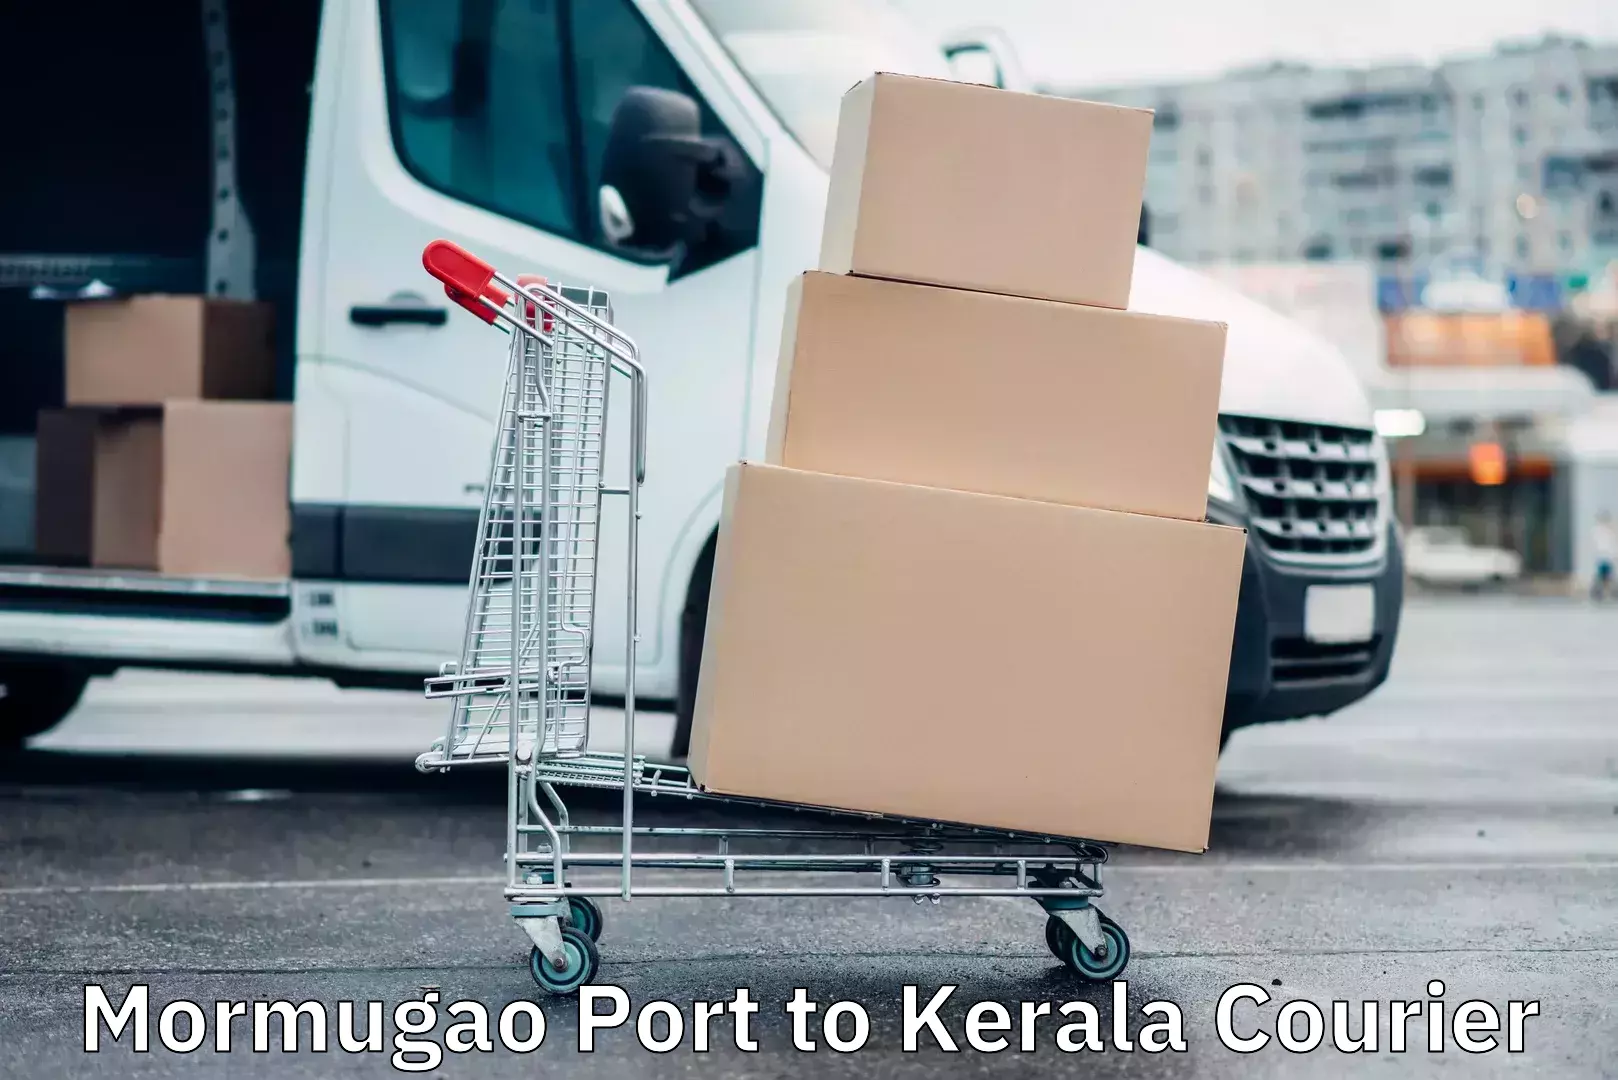 Courier app Mormugao Port to Kerala